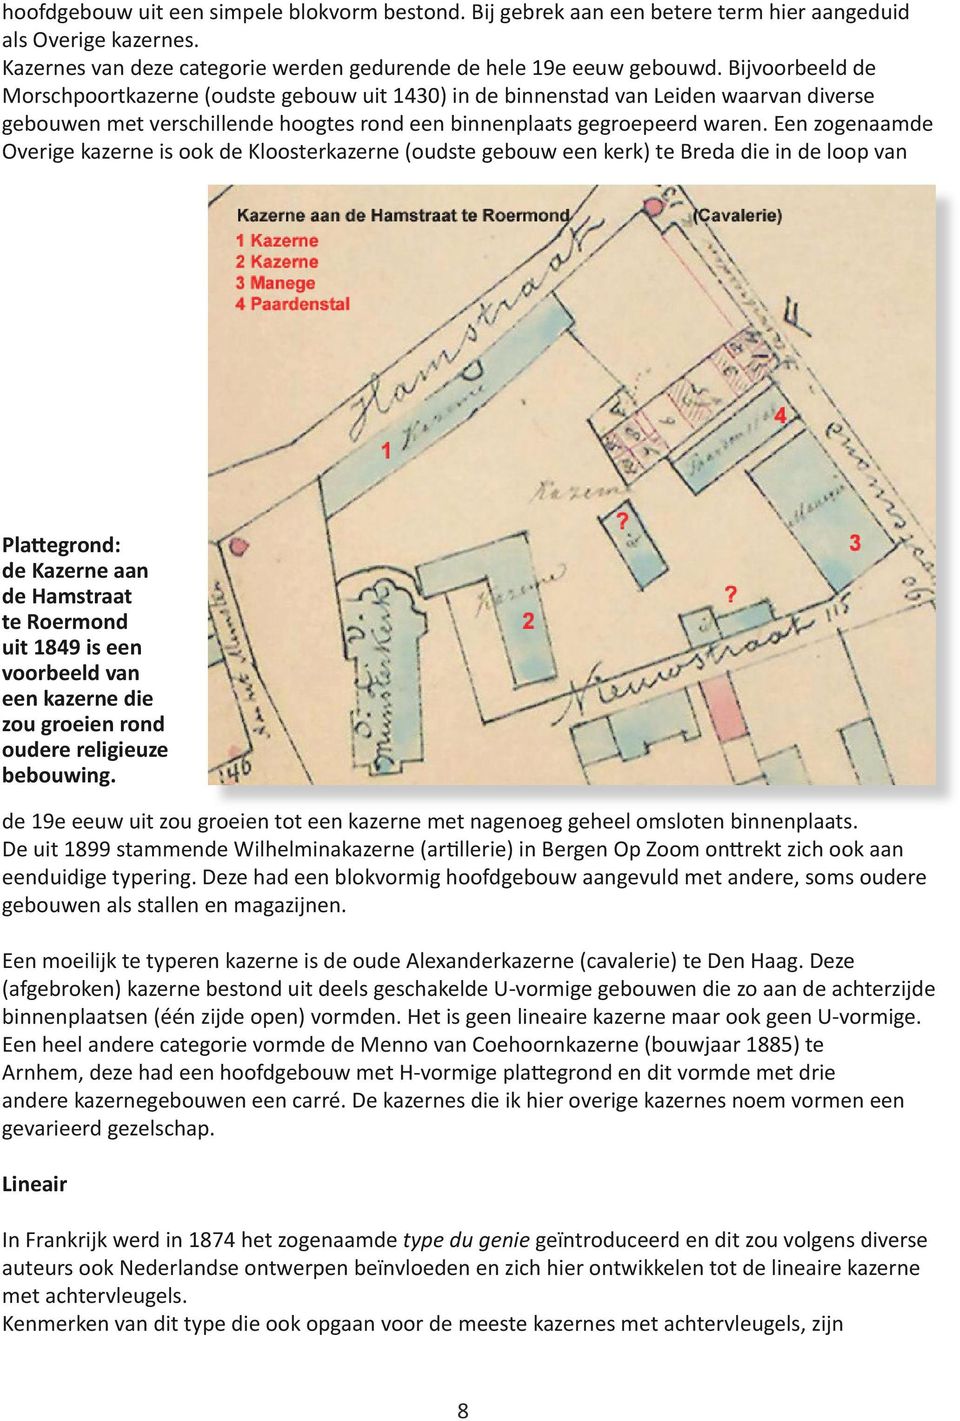 Een zogenaamde Overige kazerne is ook de Kloosterkazerne (oudste gebouw een kerk) te Breda die in de loop van Plattegrond: de Kazerne aan de Hamstraat te Roermond uit 1849 is een voorbeeld van een